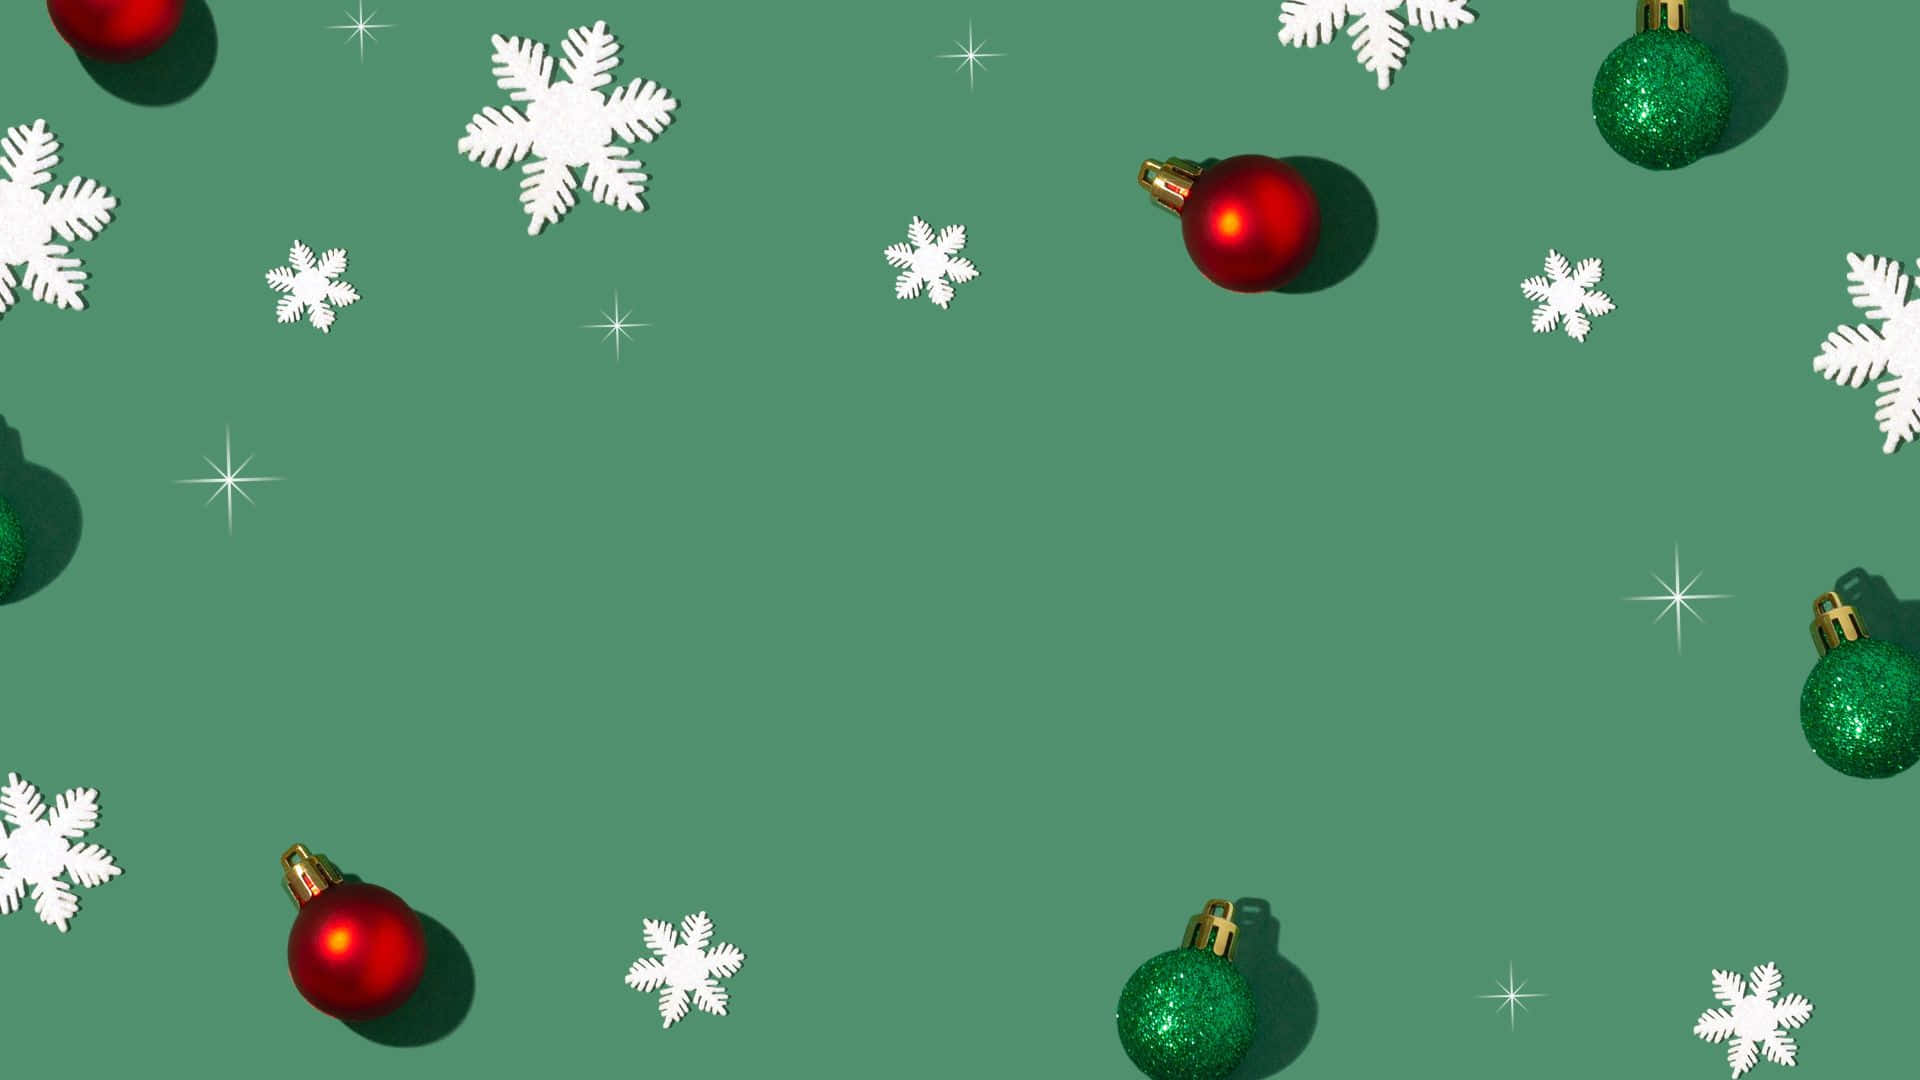 Grüneminimalistische Weihnachts Teams Hintergrundillustration.